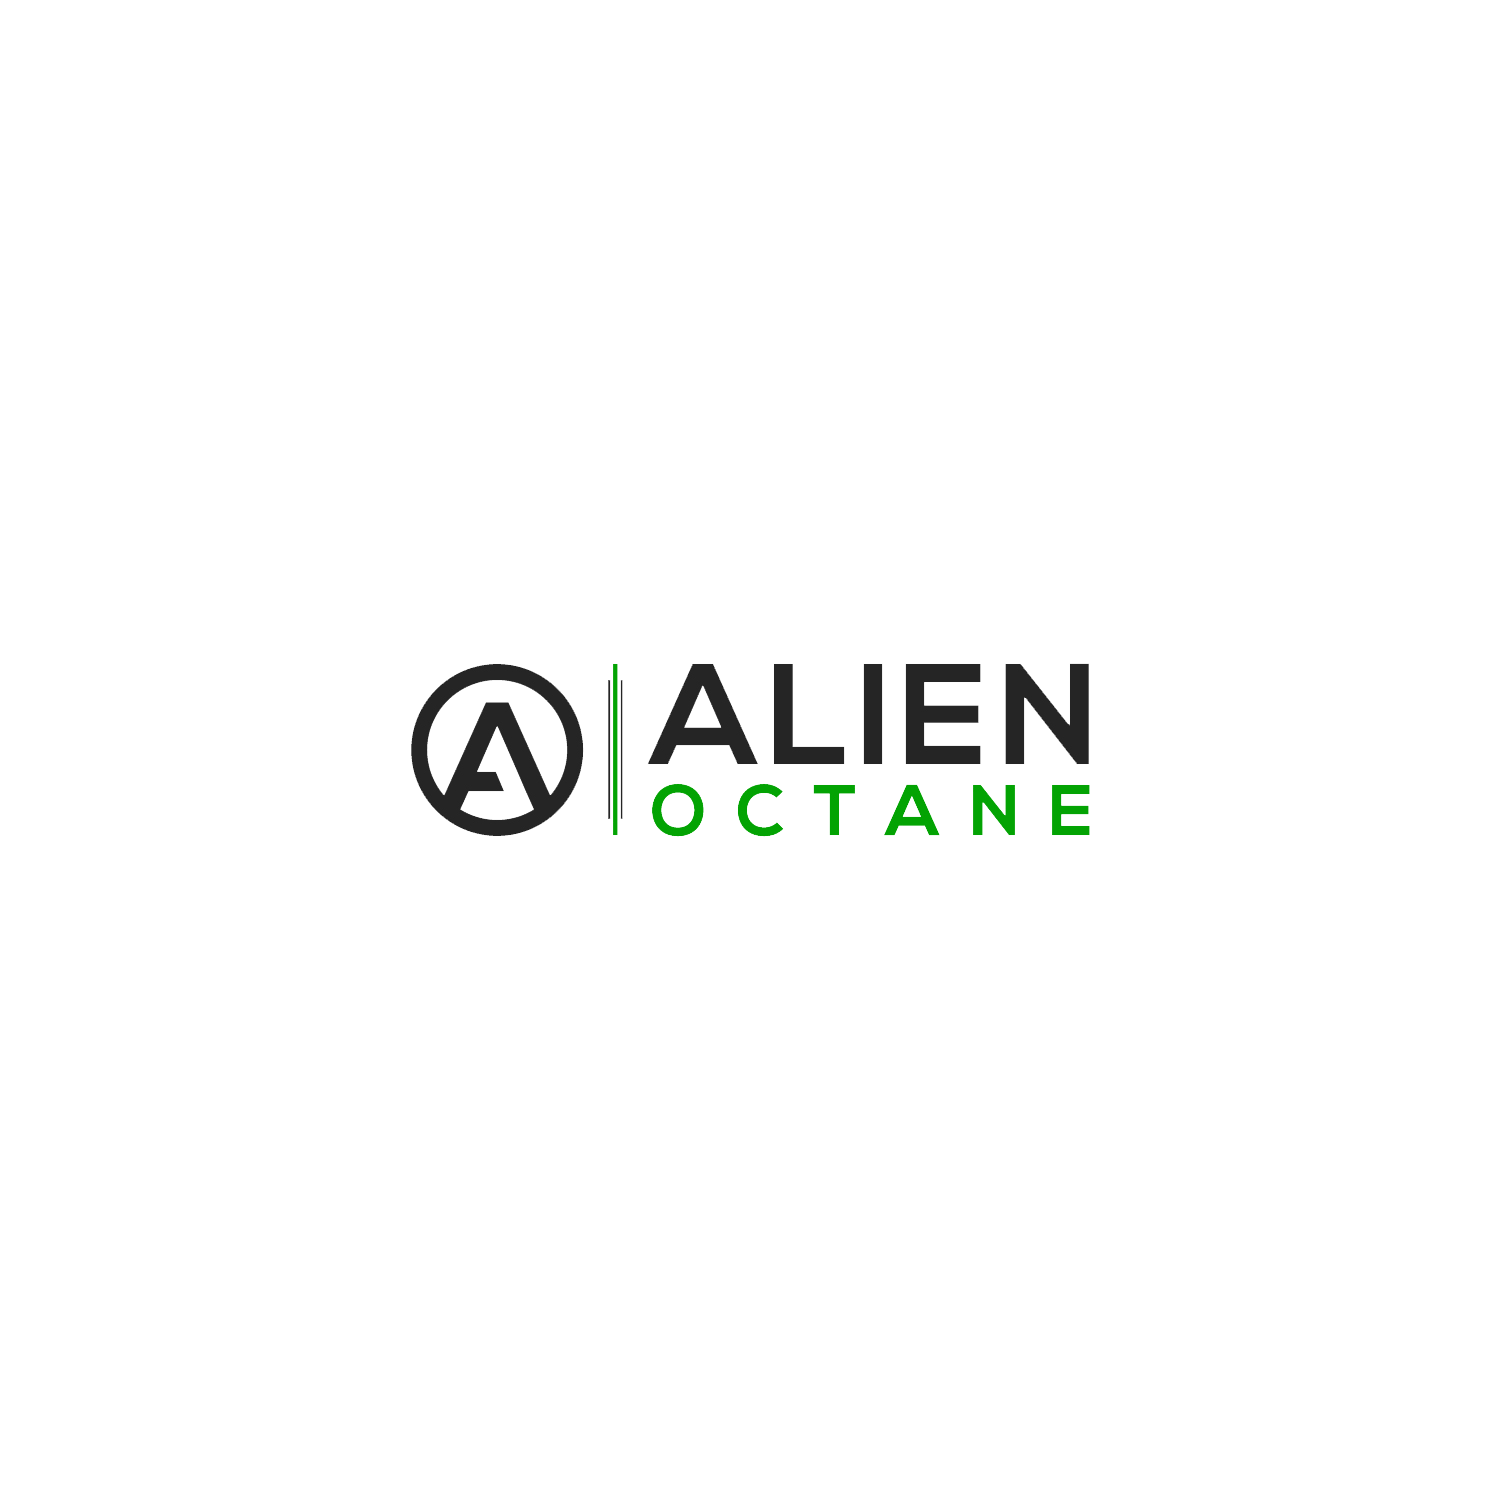 Alien Octane Telegram Channel for Cannabis Vendors